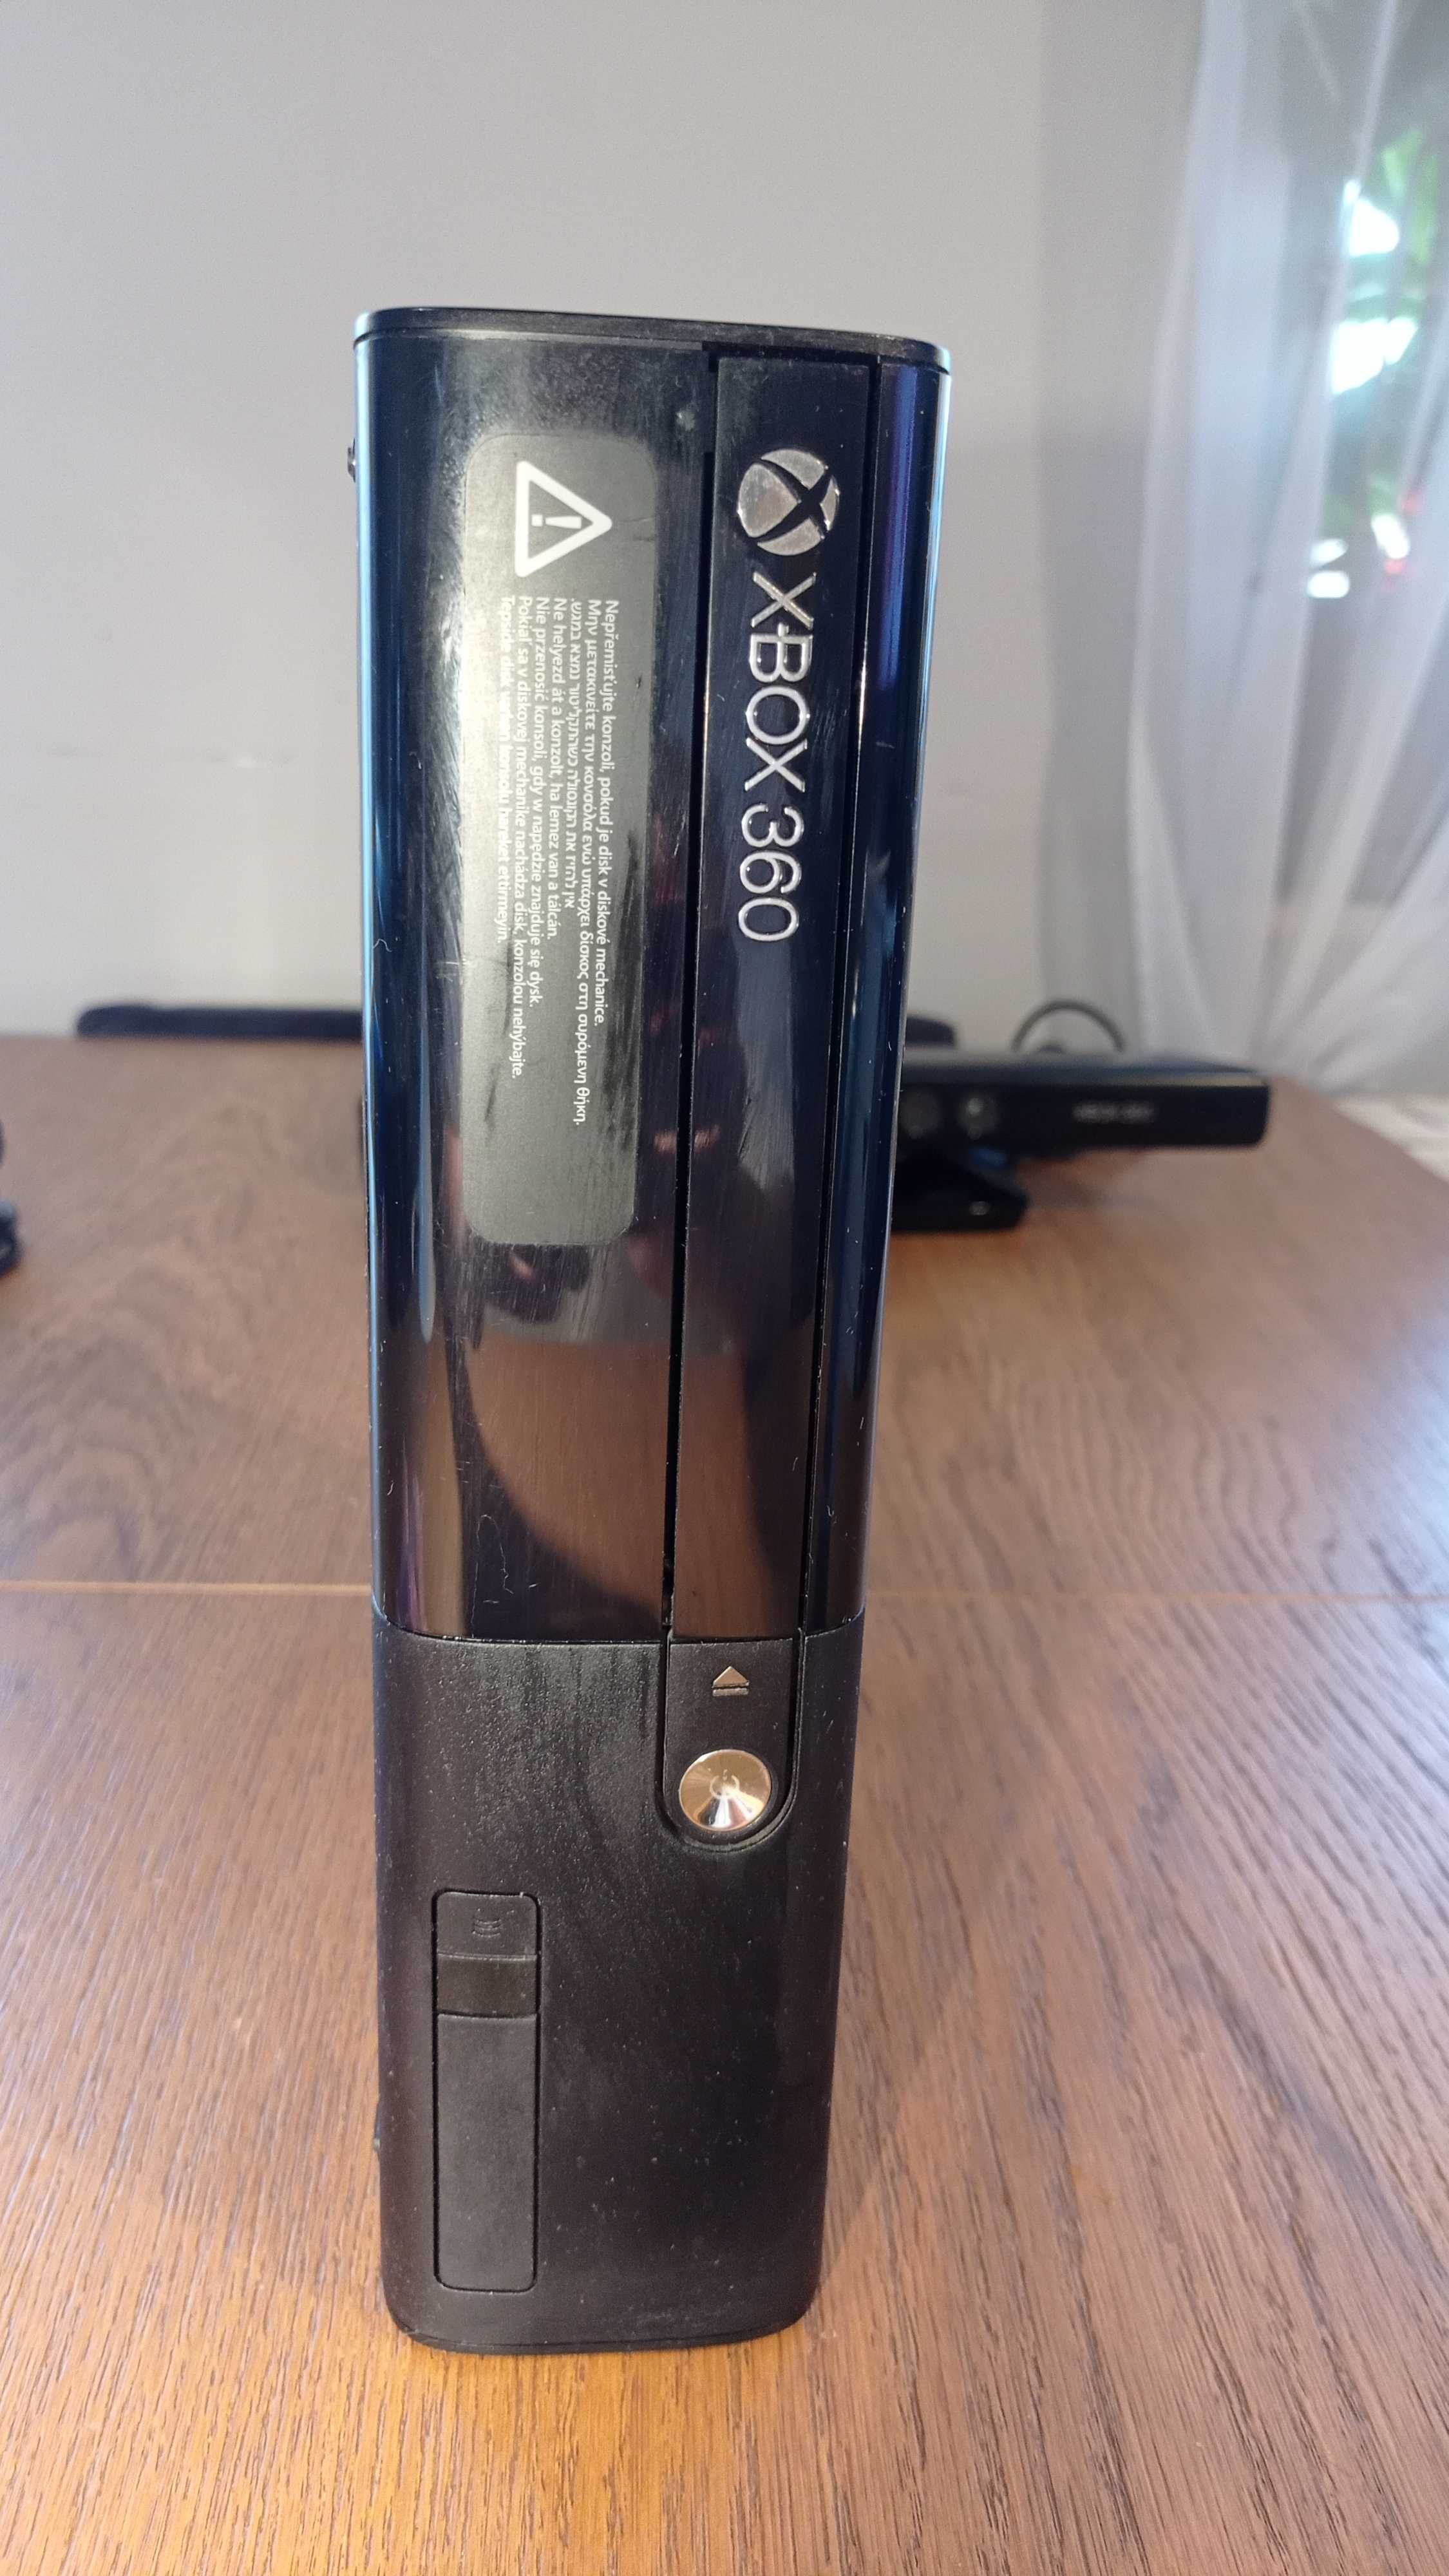 Xbox 360 Slim + Kinect + Gry